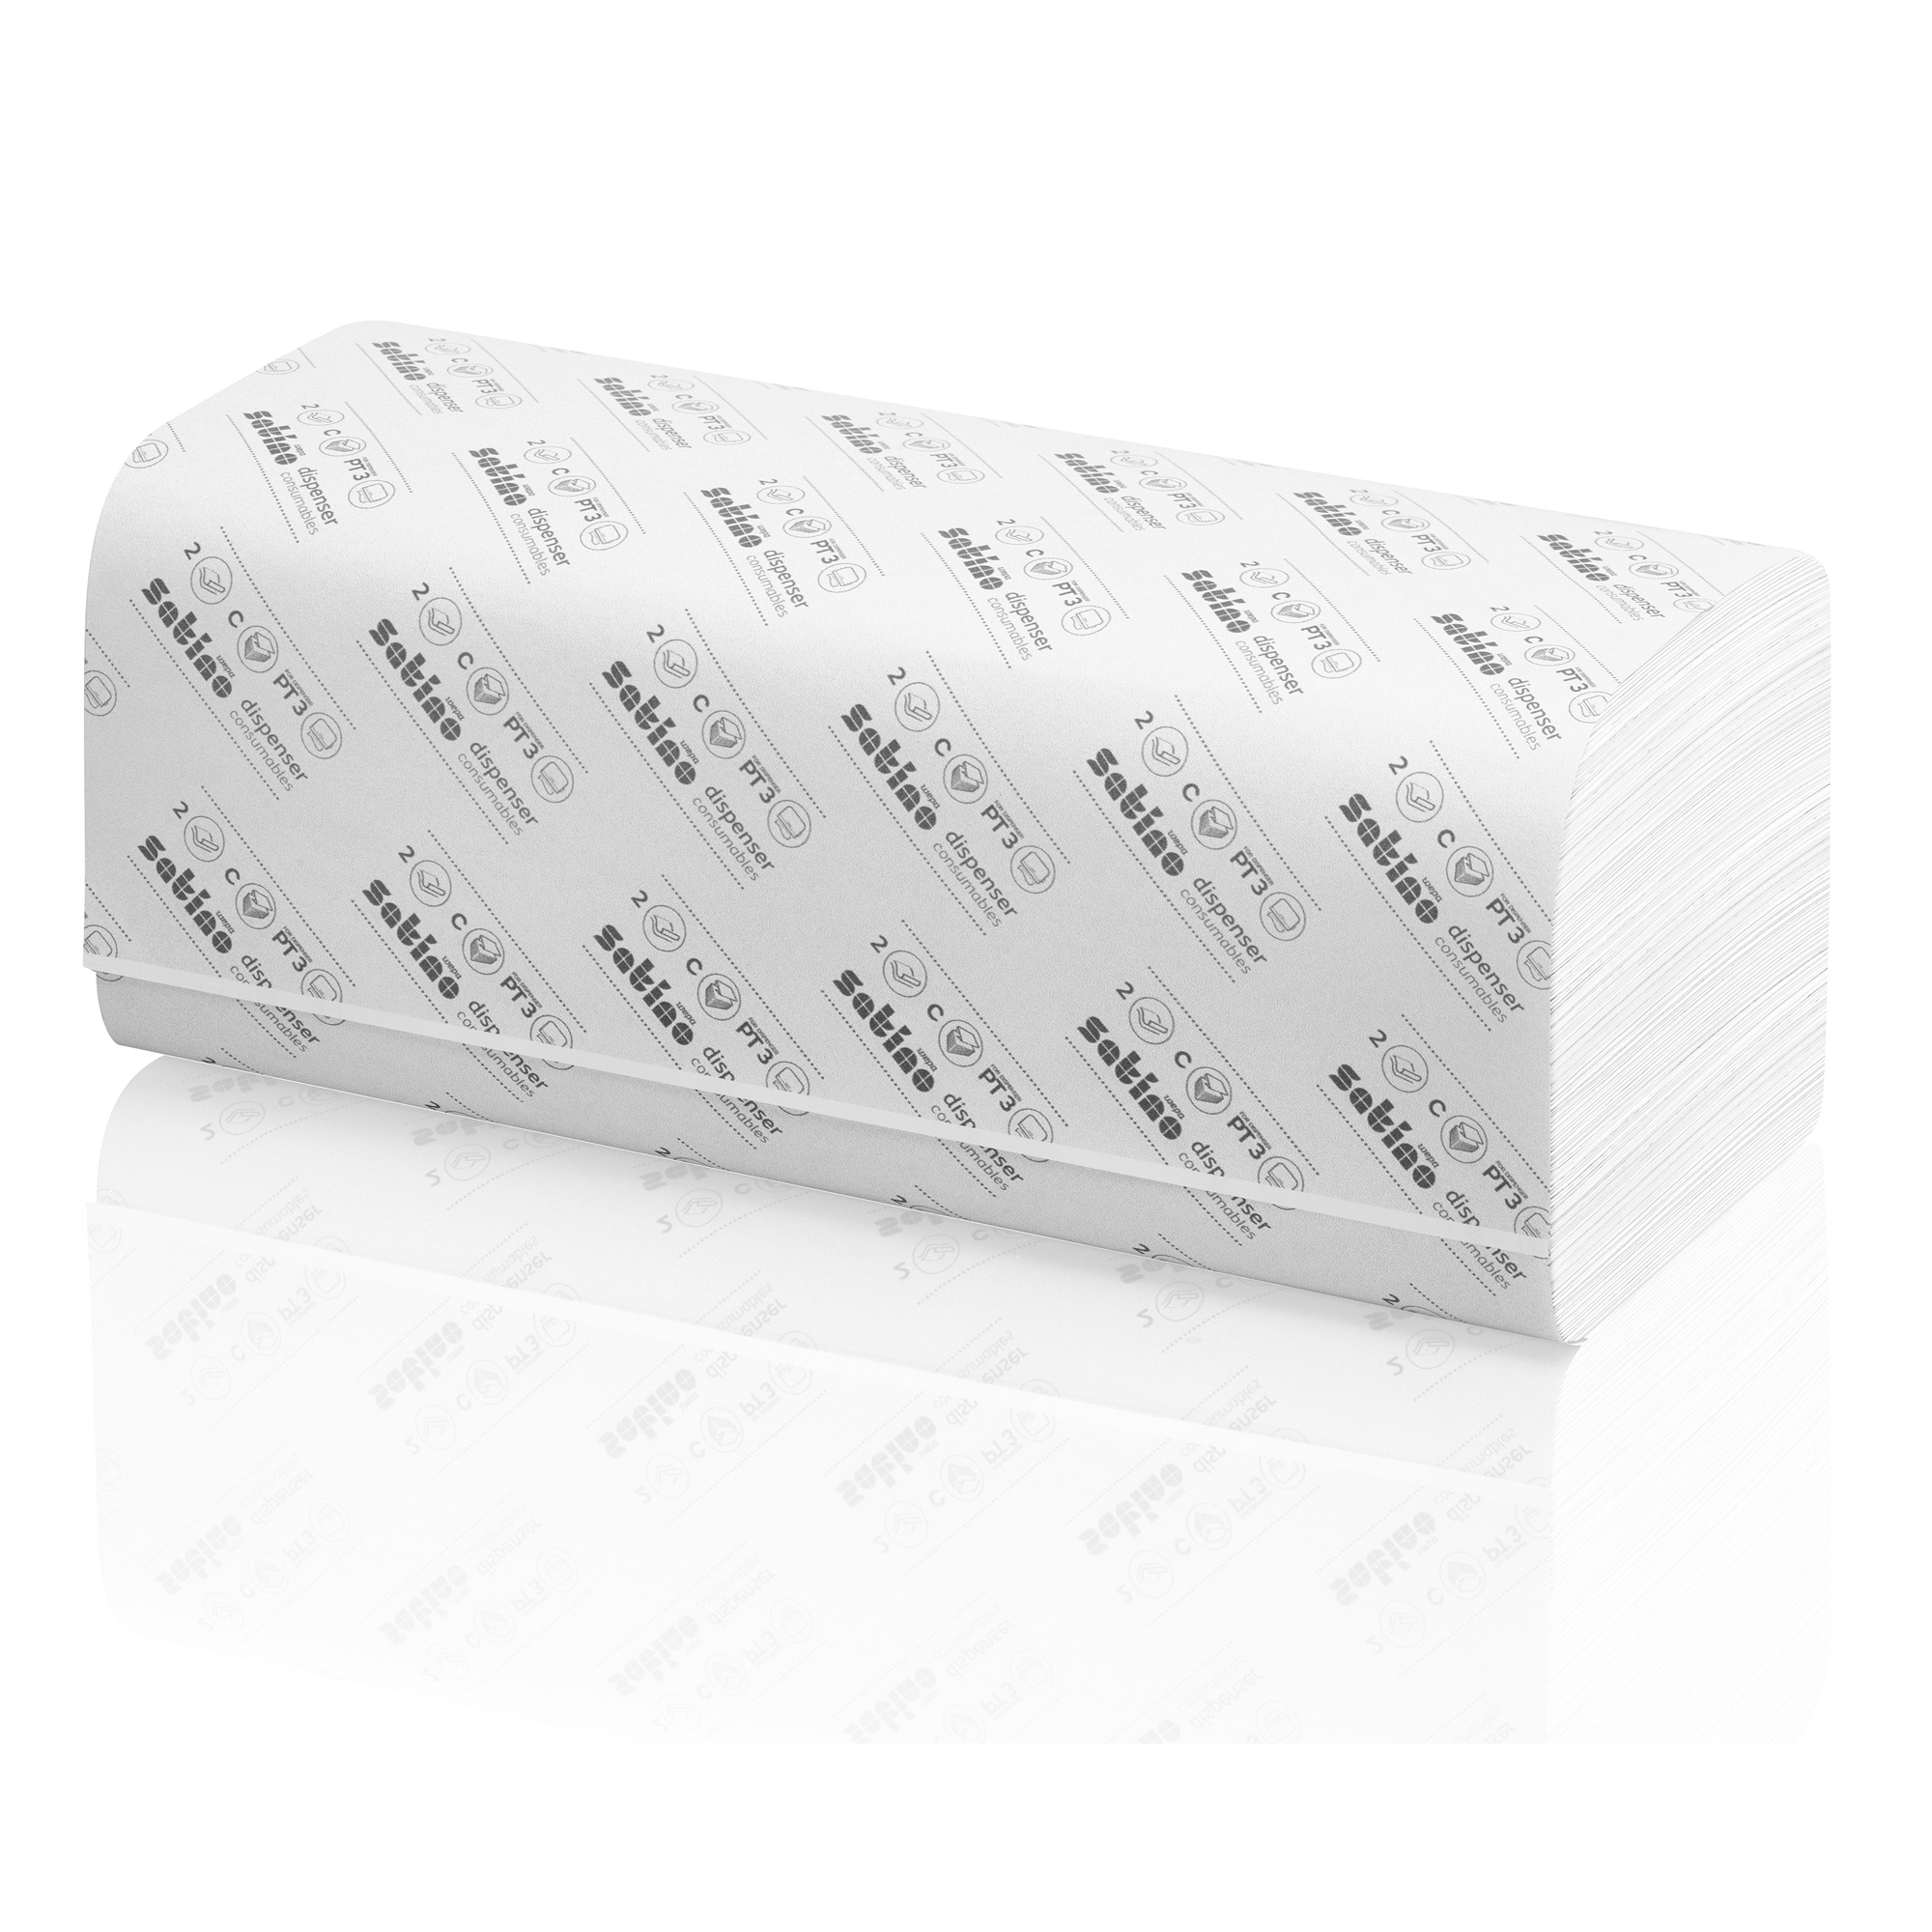 Satino by Wepa prestige Papierhandtücher Zellstoff Tissue, CZ, 23x32, 2-lagig, hochweiß 2880 Tücher Banderole  276790